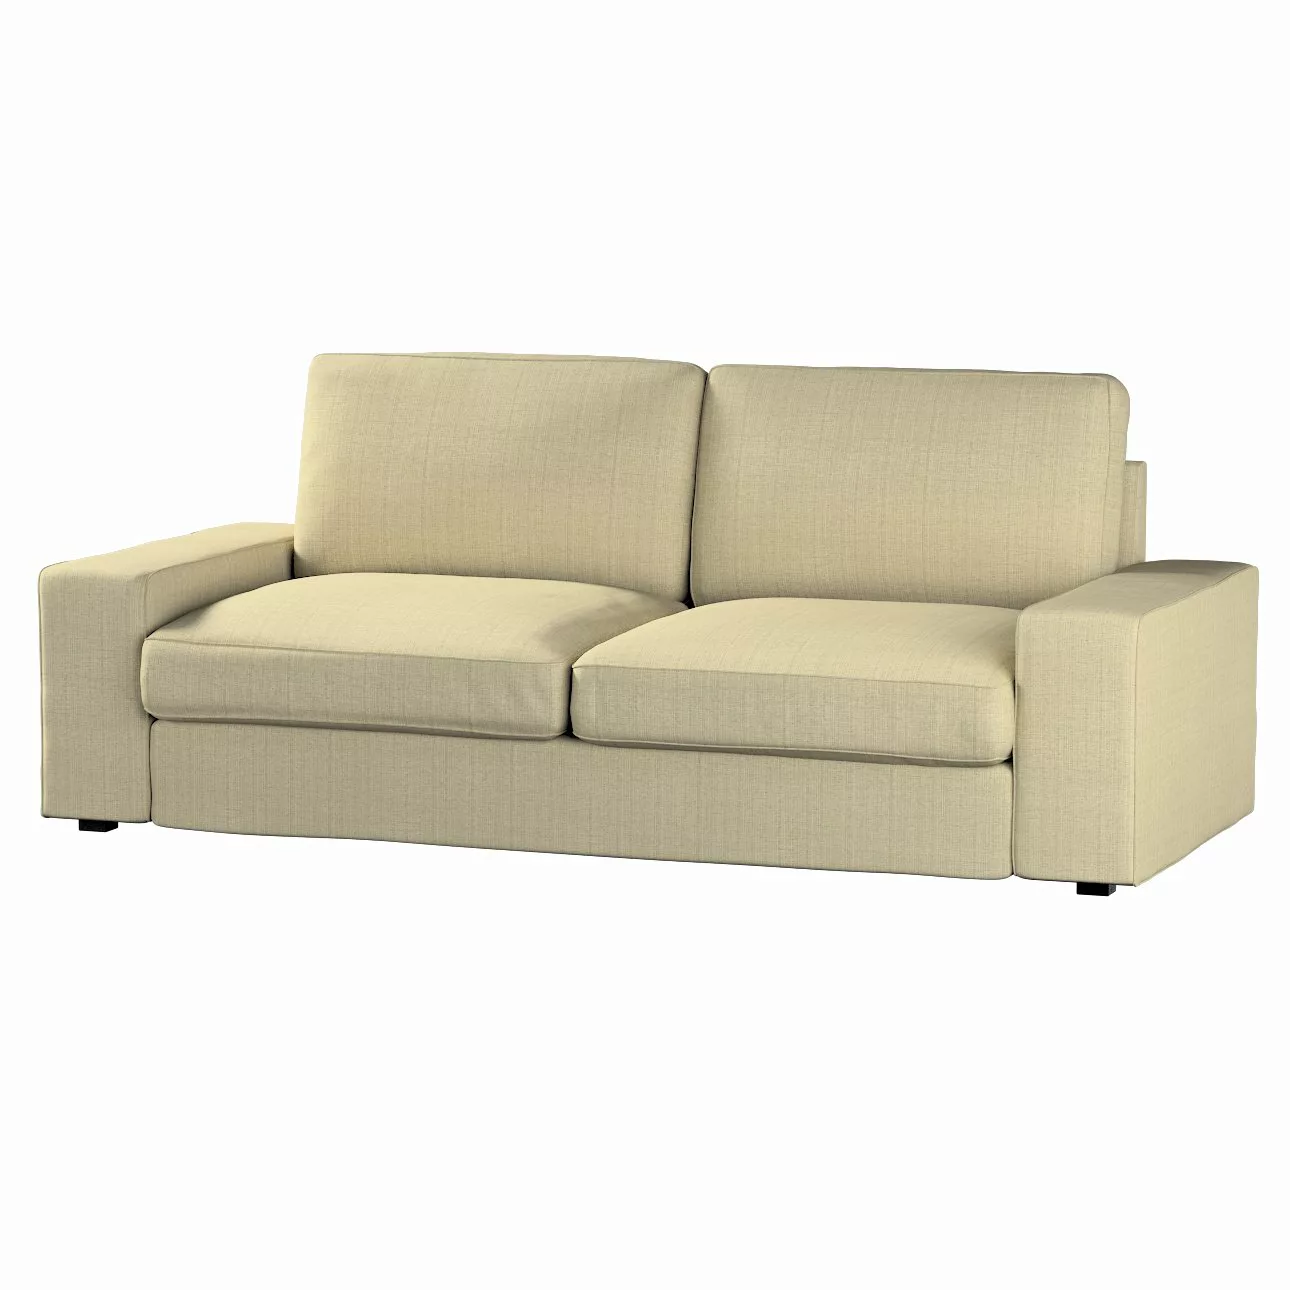 Bezug für Kivik 3-Sitzer Sofa, beige-creme, Bezug für Sofa Kivik 3-Sitzer, günstig online kaufen